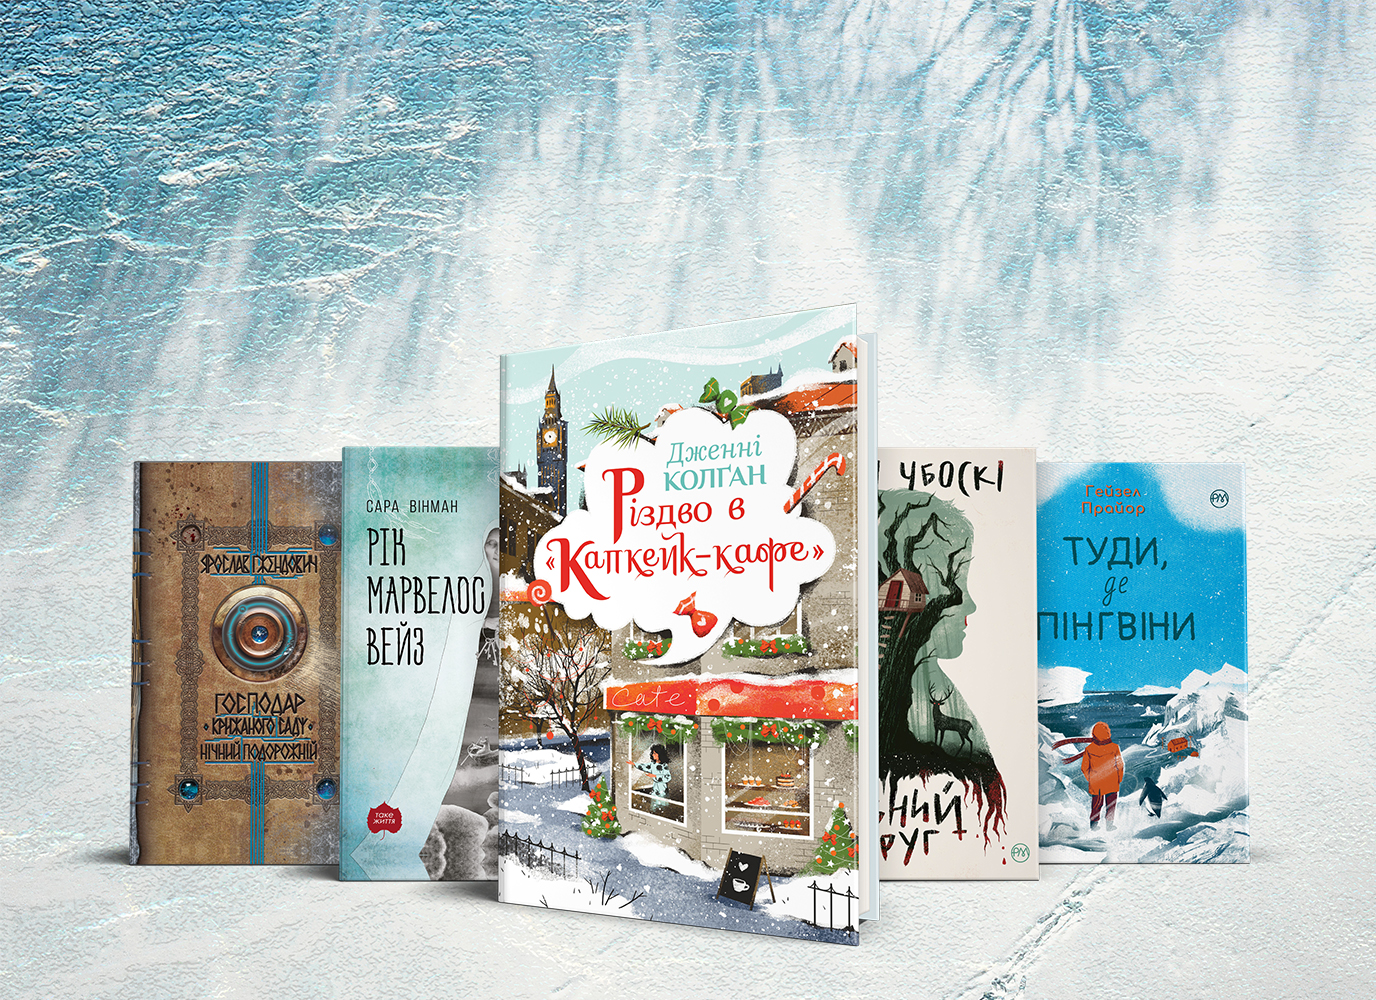 Сніг, мороз, Різдво – п’ять романів із зимовим настроєм